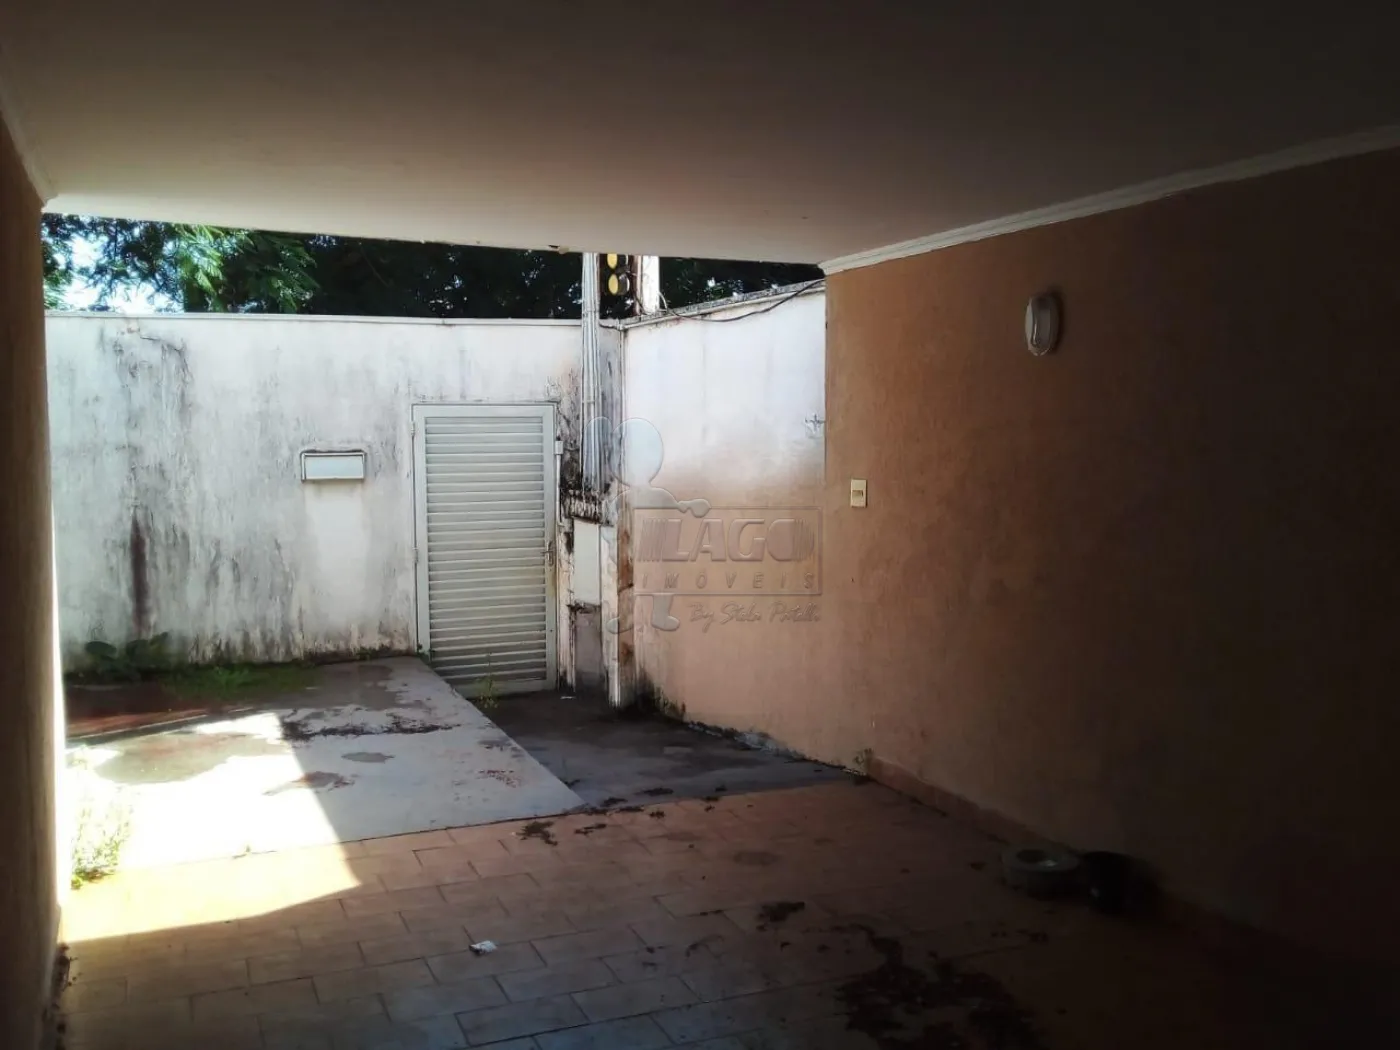 Comprar Casas / Padrão em Ribeirão Preto R$ 450.000,00 - Foto 3